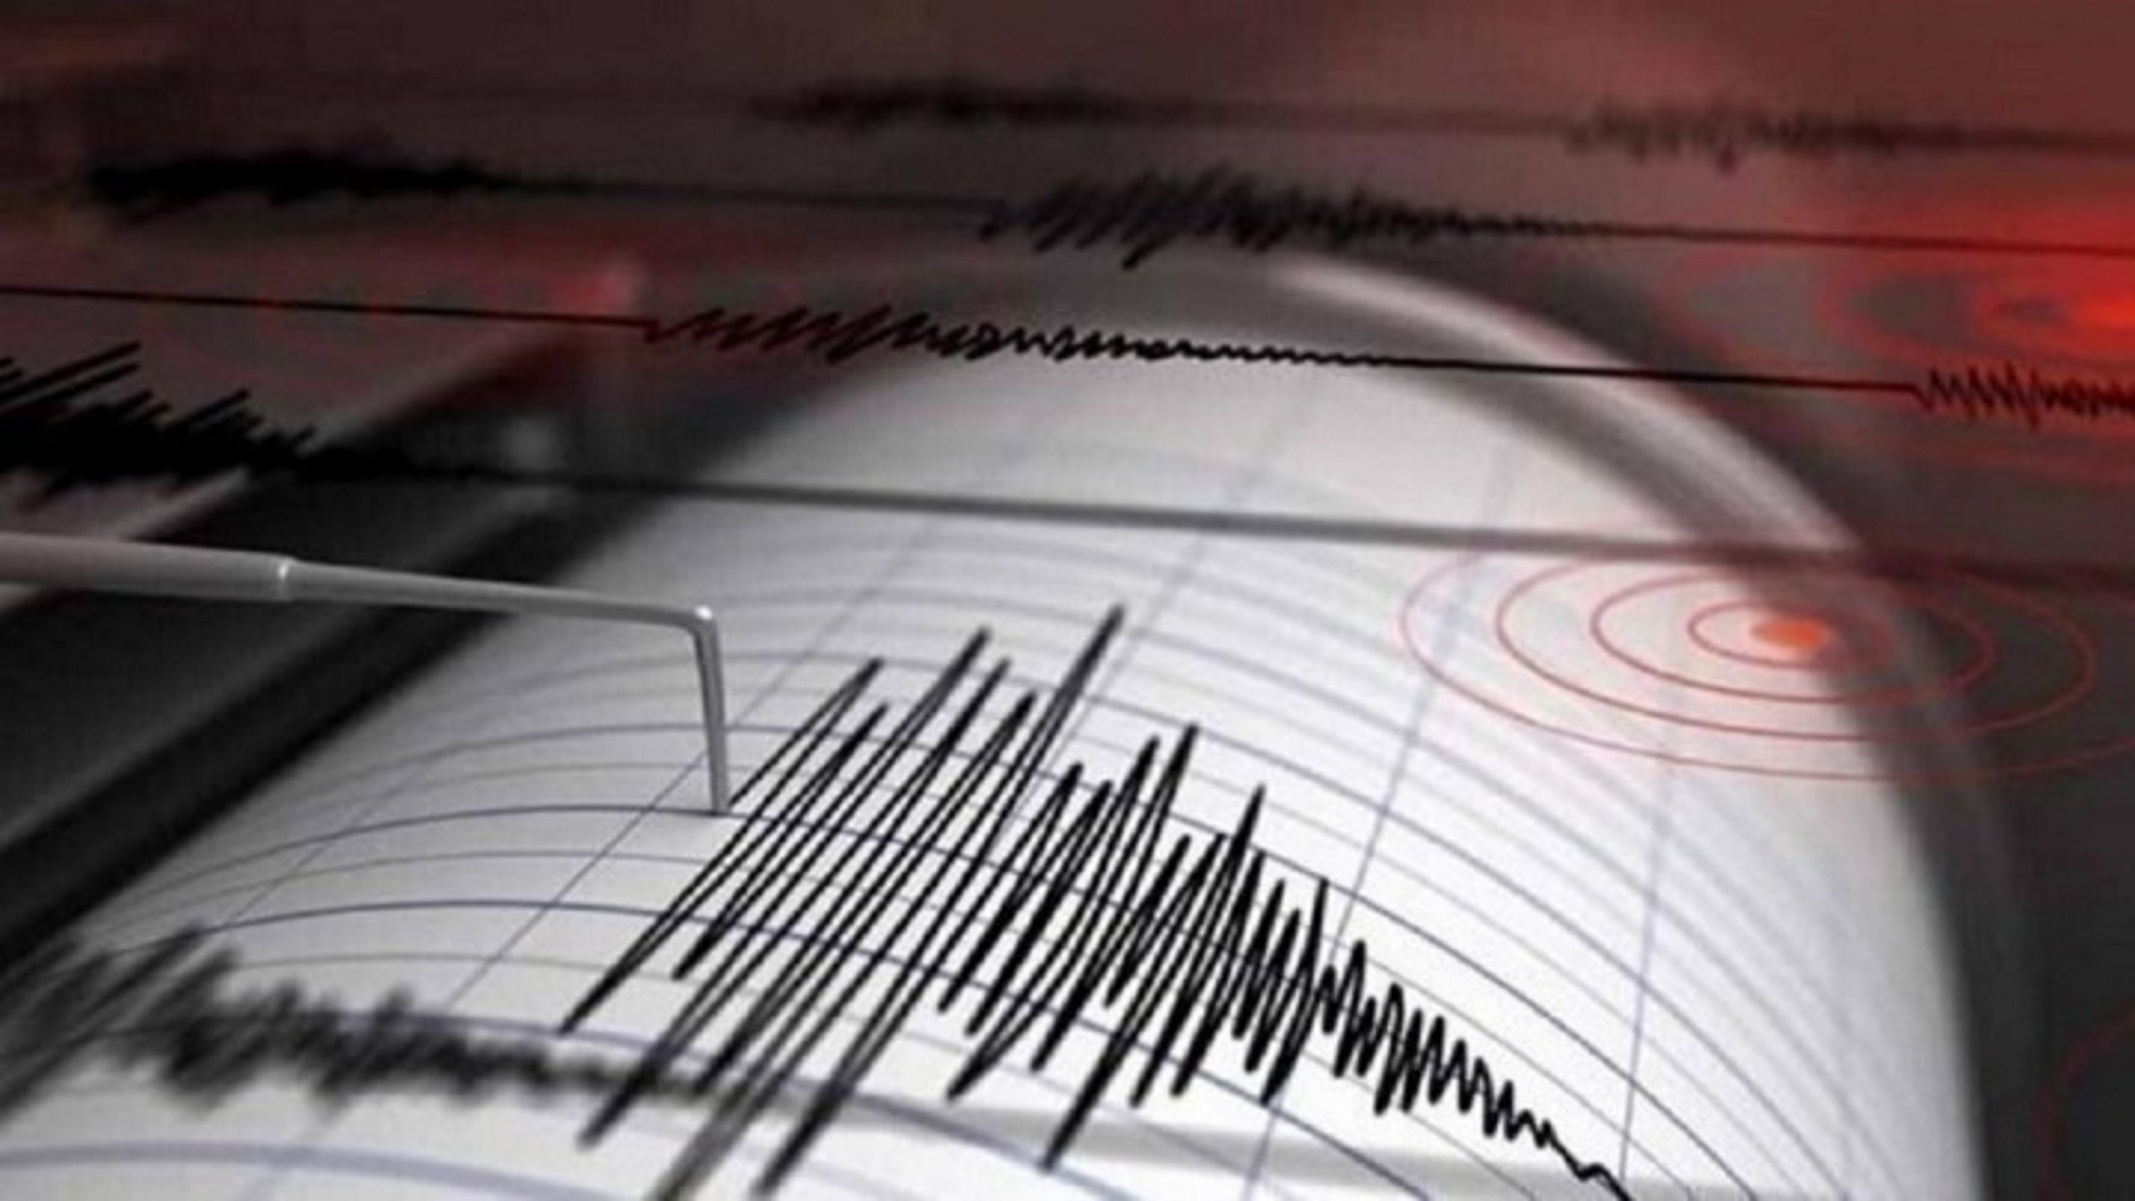 Σεισμός 3,6 Ρίχτερ κοντά στην Λευκάδα – Μικρό το εστιακό βάθος